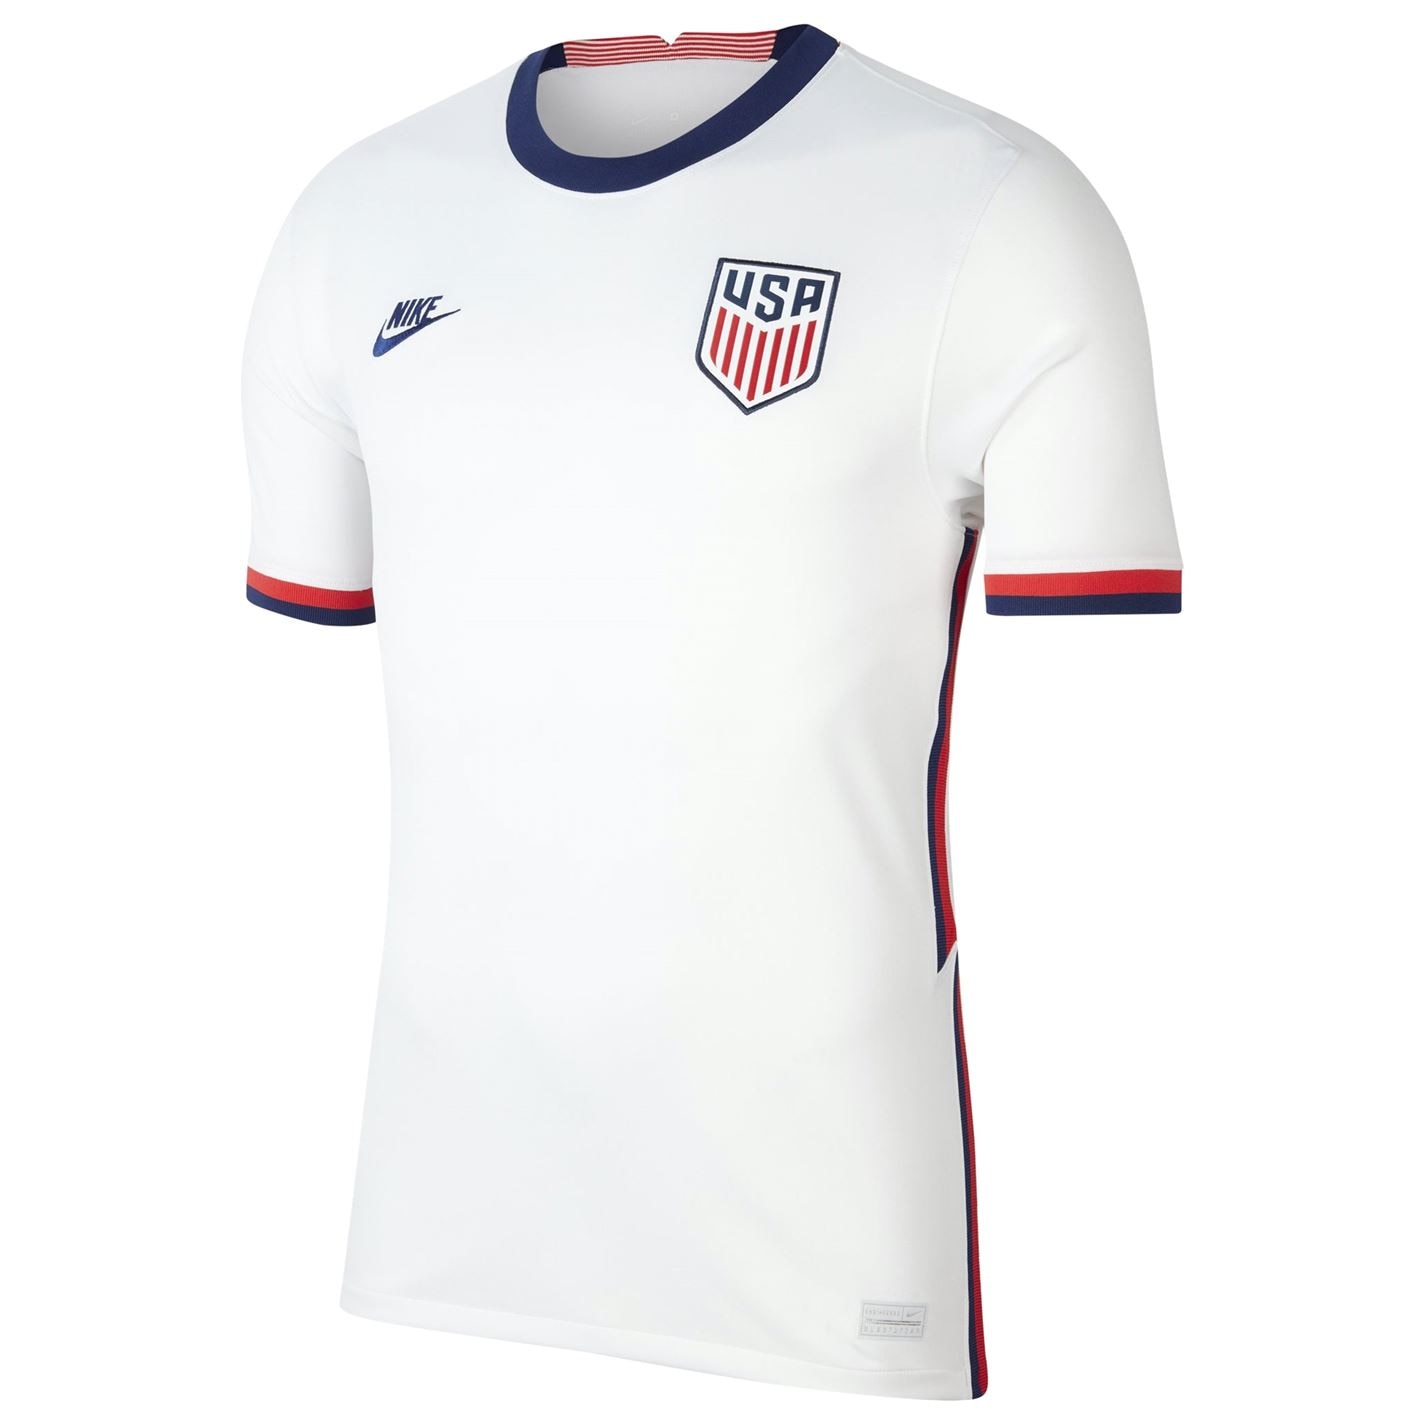 Tricou echipa Nike USA 2020 pentru Barbati alb albastru